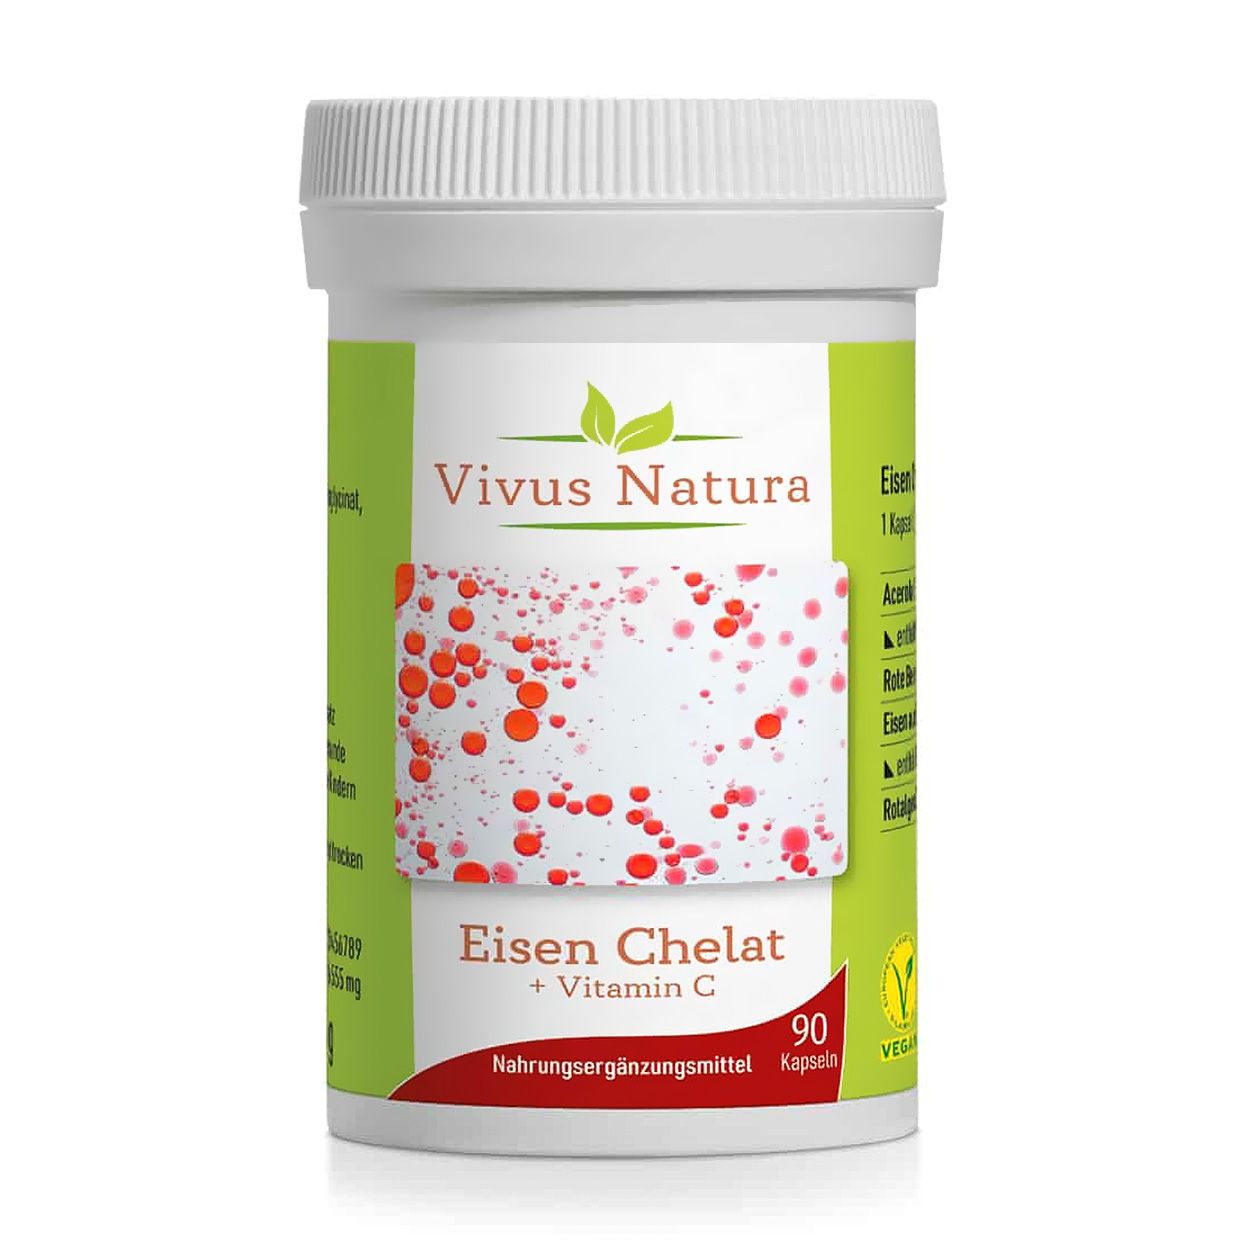 Vivus Natura Eisen Chelat + Vitamin C Kapseln